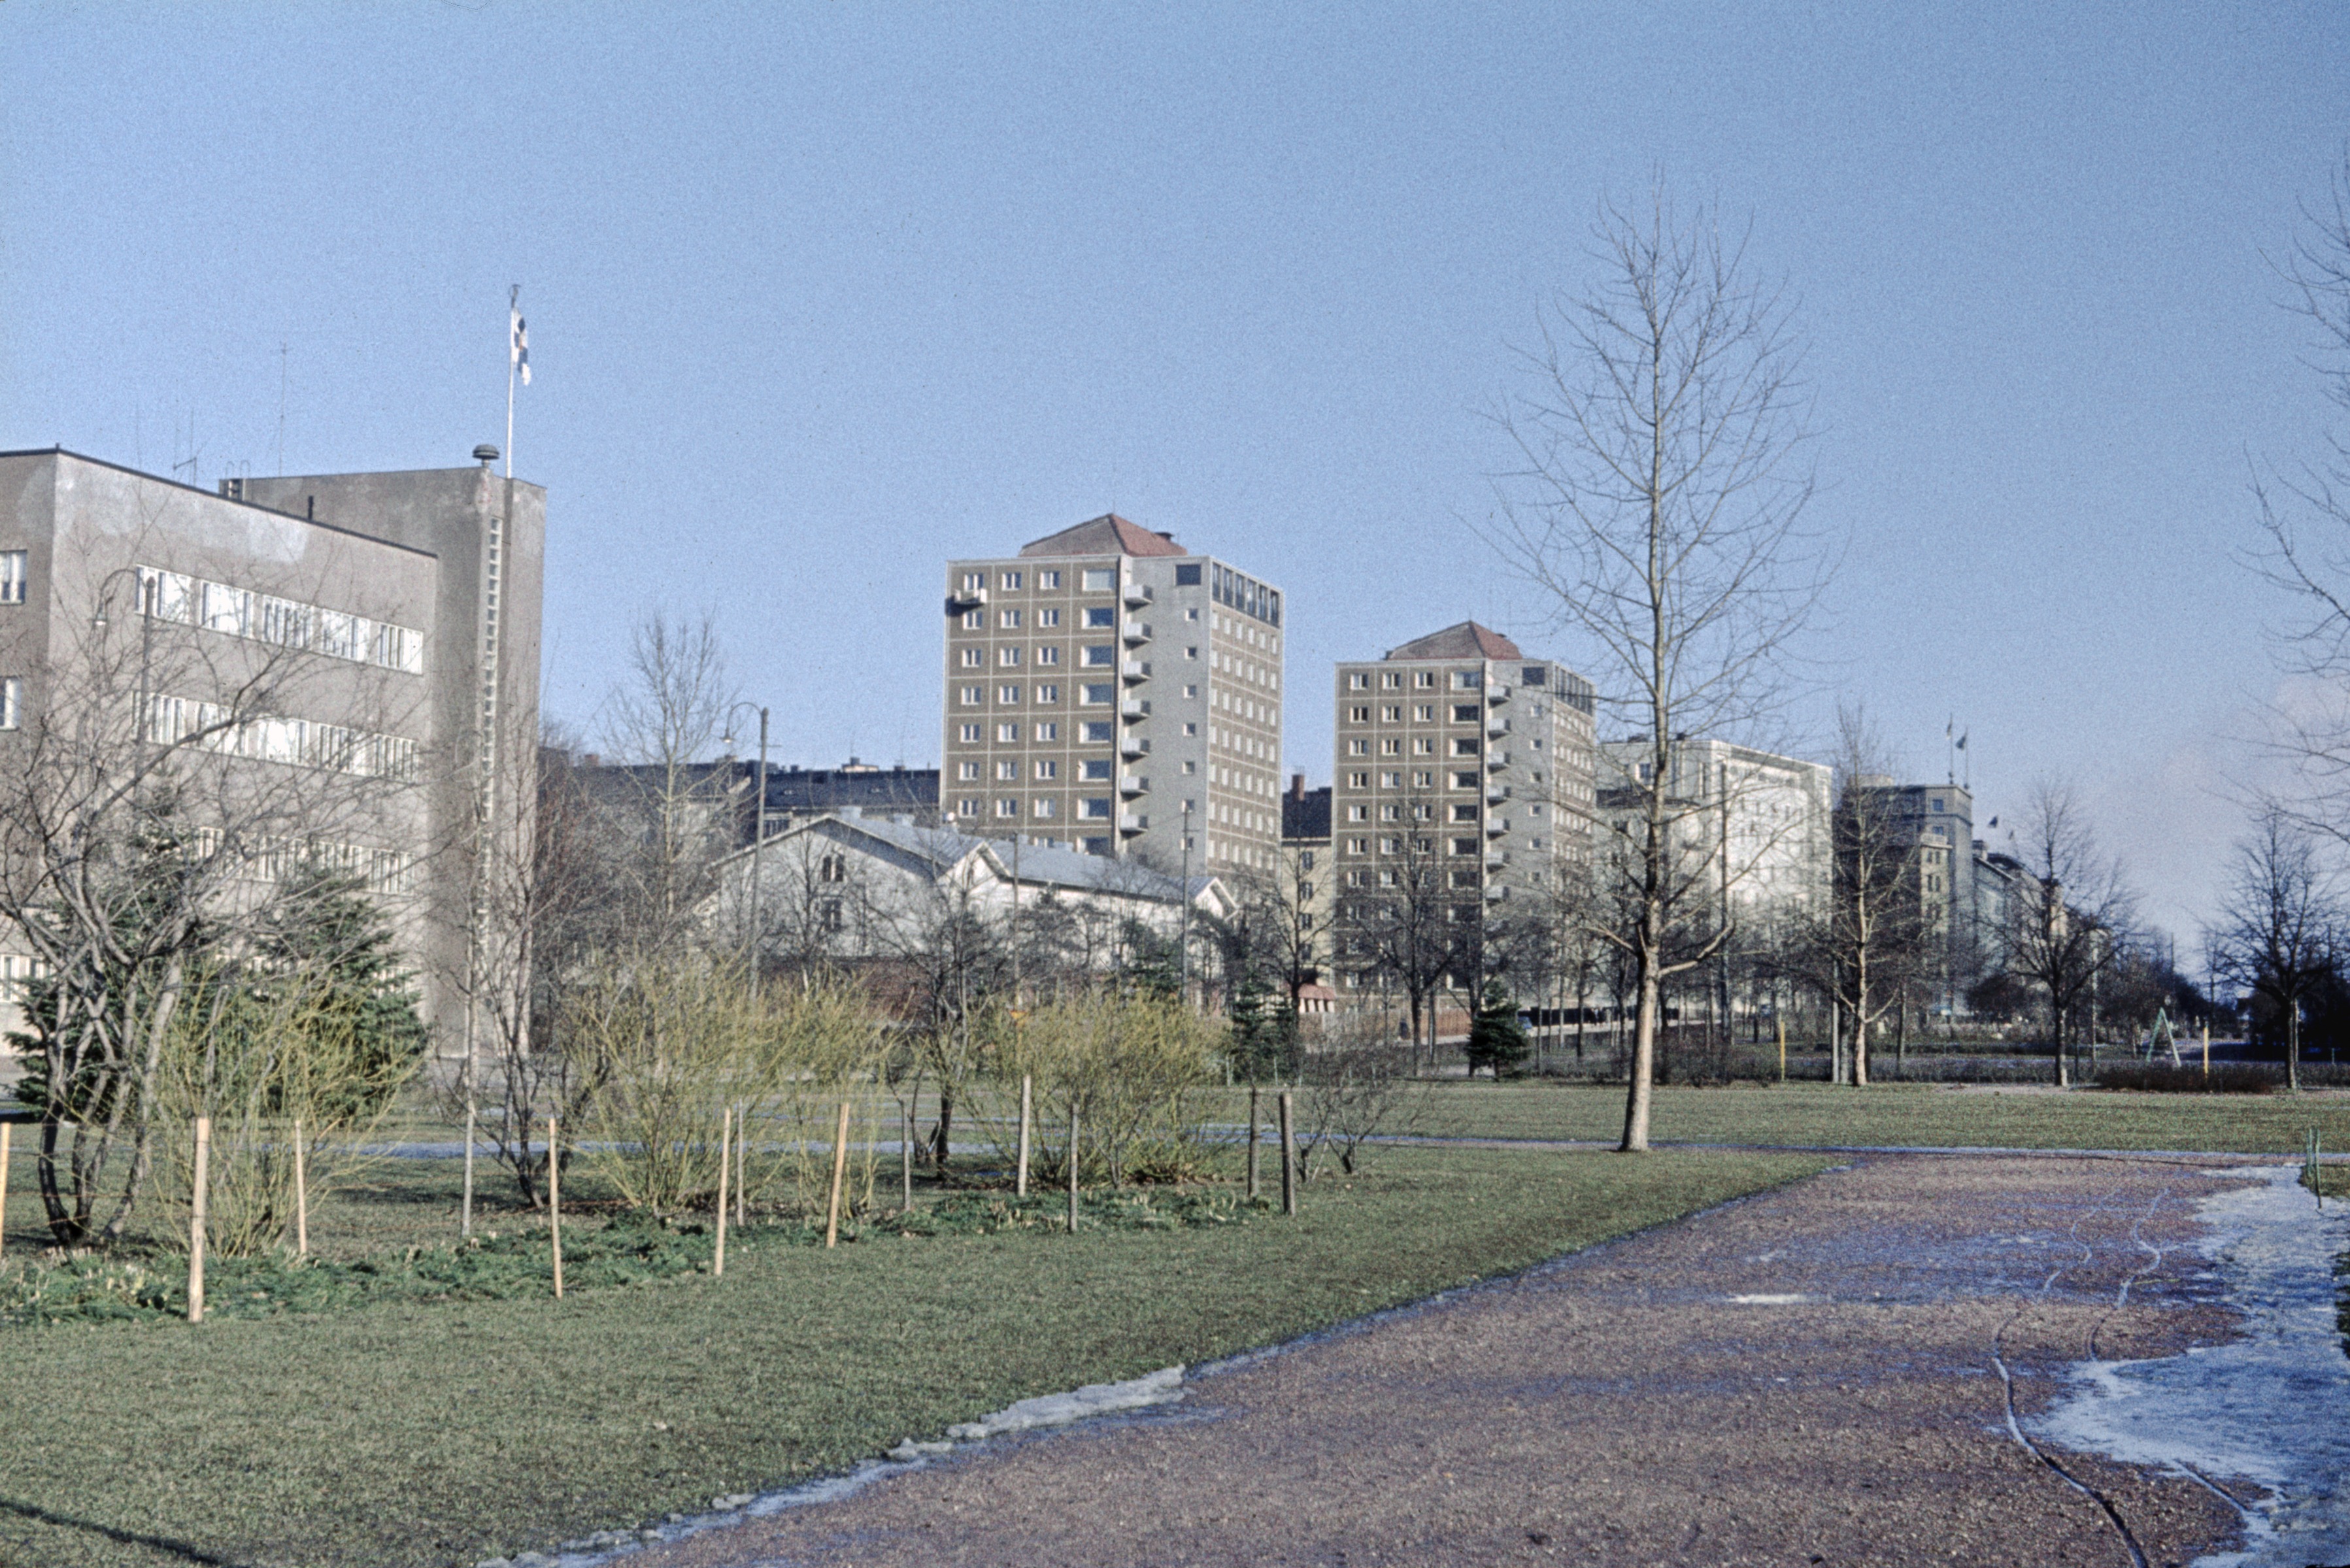 Näkymä Hesperian esplanadia pitkin koilliseen, vasemmalla Autokomppanian kasarmi (Pohjoinen Hesperiankatu 35) sekä Kivelän sairaalan rakennuksia (Pohjoinen Hesperiankatu 27, 25, 23).